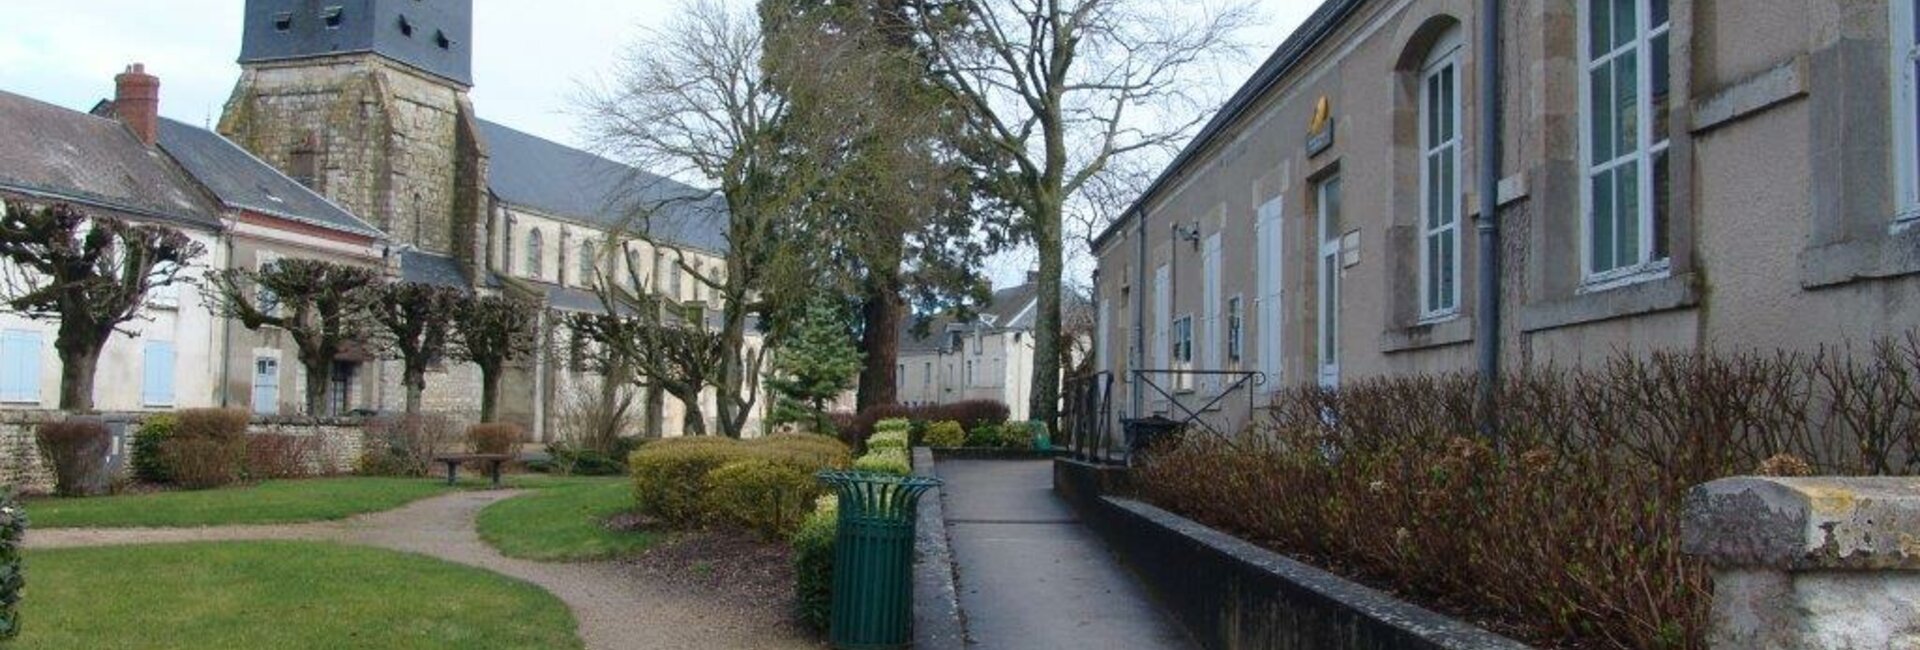 Le Panneau Pocket de la Commune de Aschères-le-Marché (45) Loiret